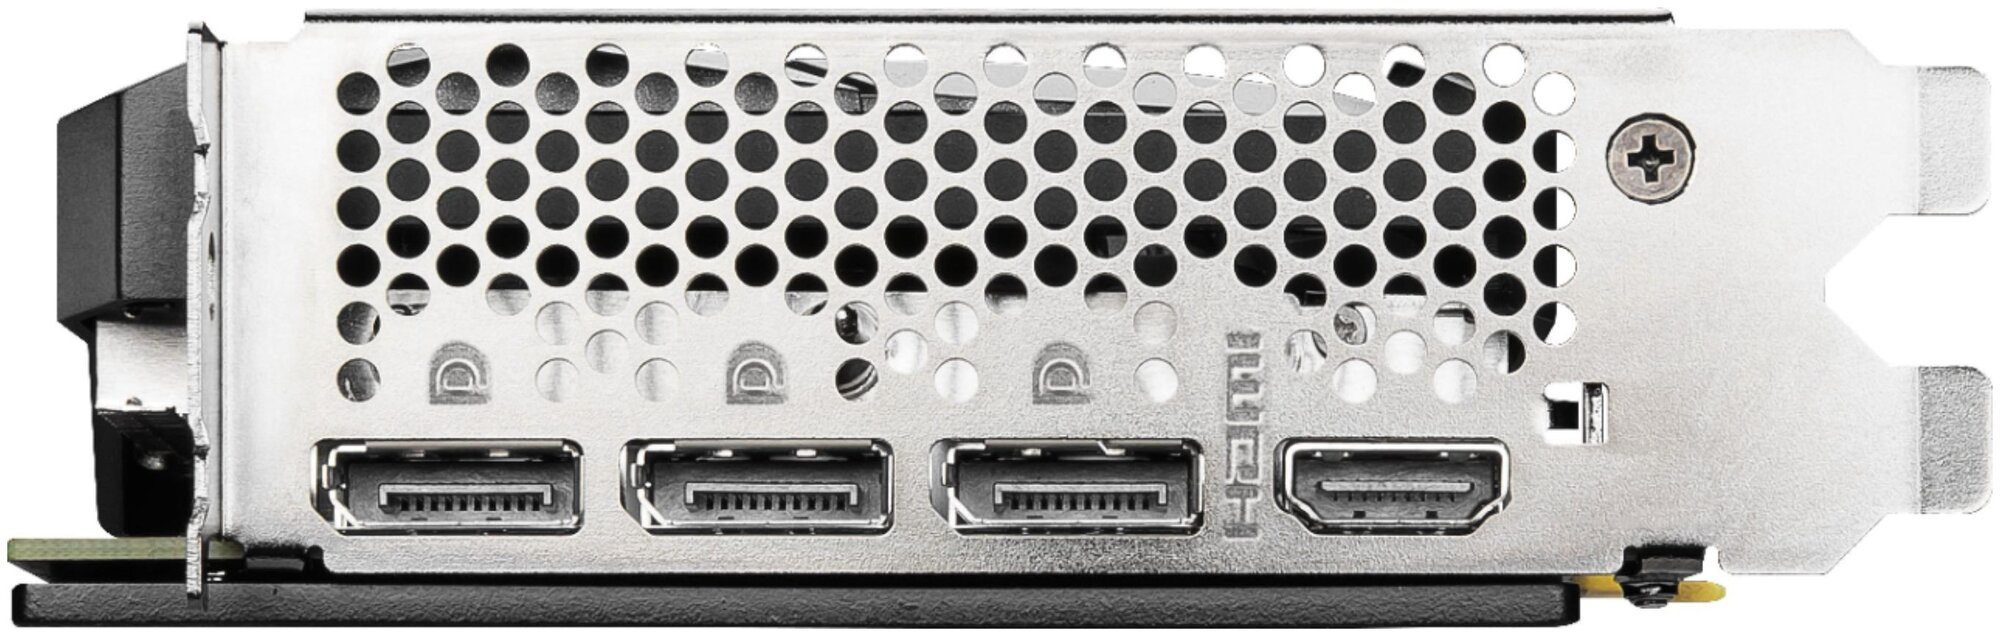 Видеокарта MSI GeForce RTX 3060 VENTUS 3X 12G, Retail